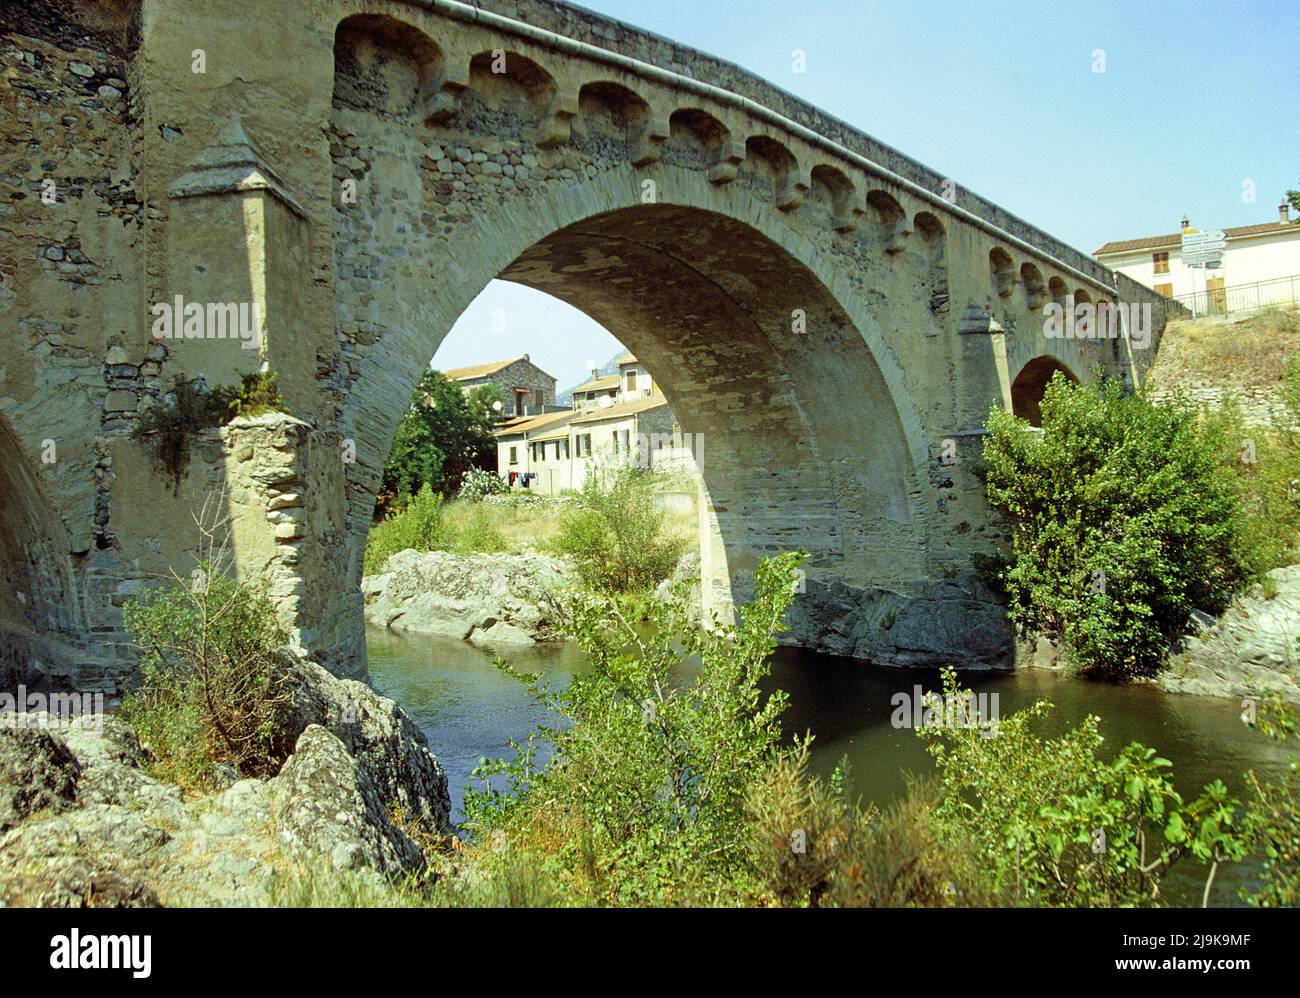 Vieux pont de pierre de Genoese, sur le lit de la rivière sèche, rivière Tavignano, Corse, France, Méditerranée, Europe Banque D'Images